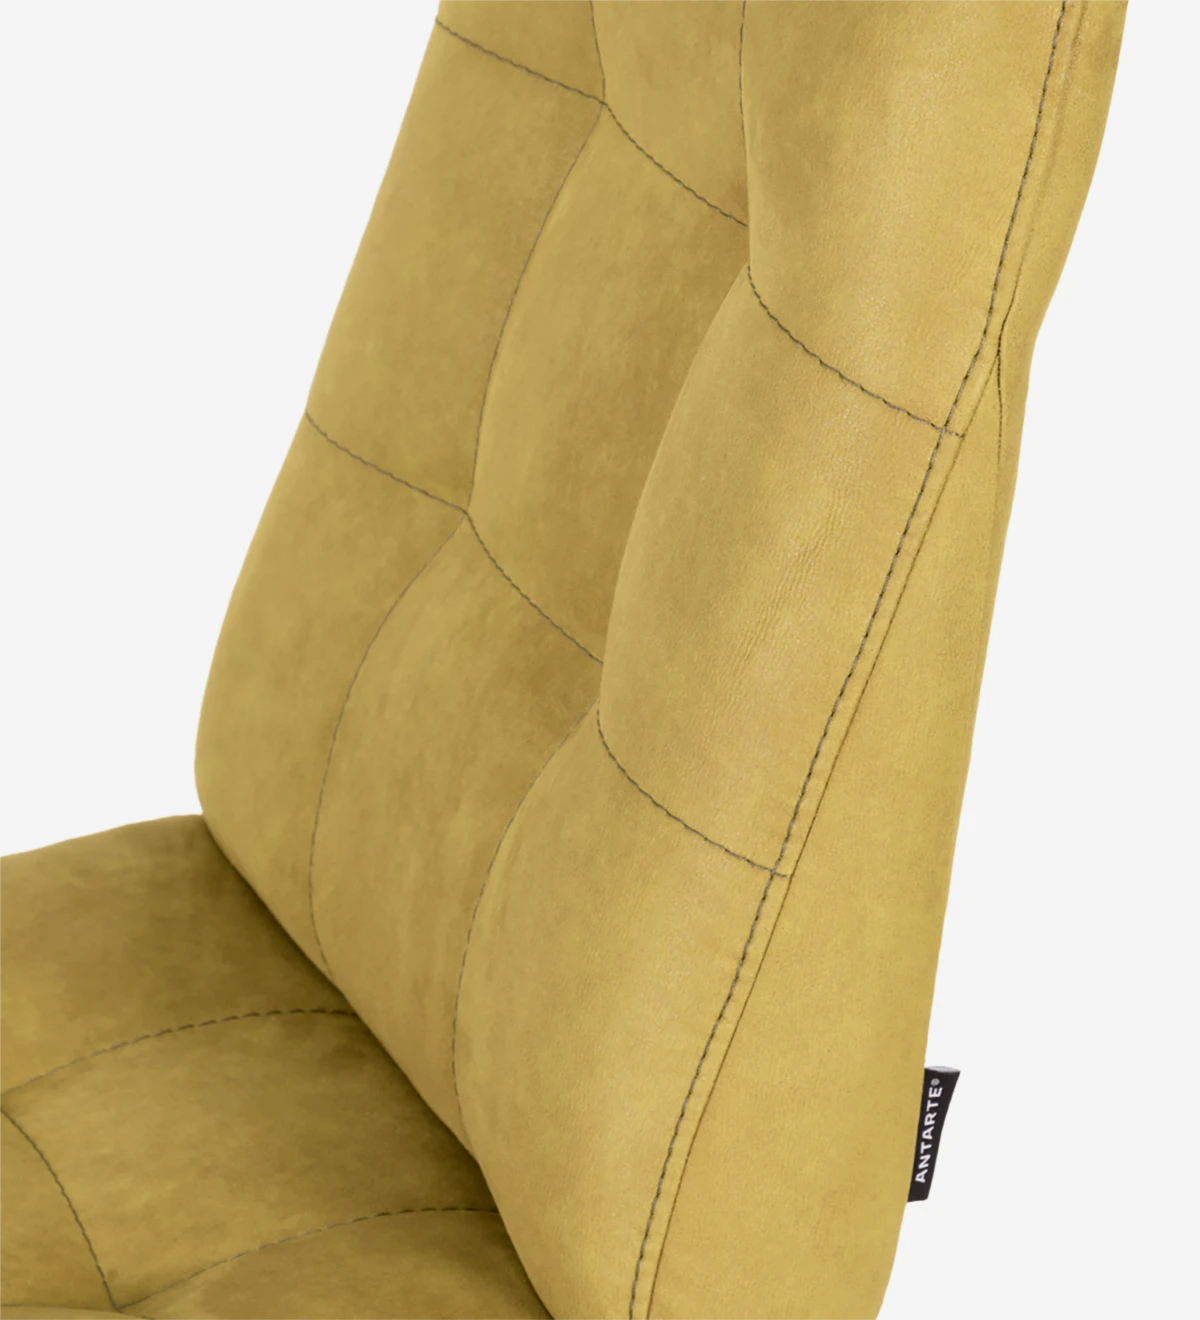 Chaise recouverte de tissu, avec des pieds en métal laqué en or.